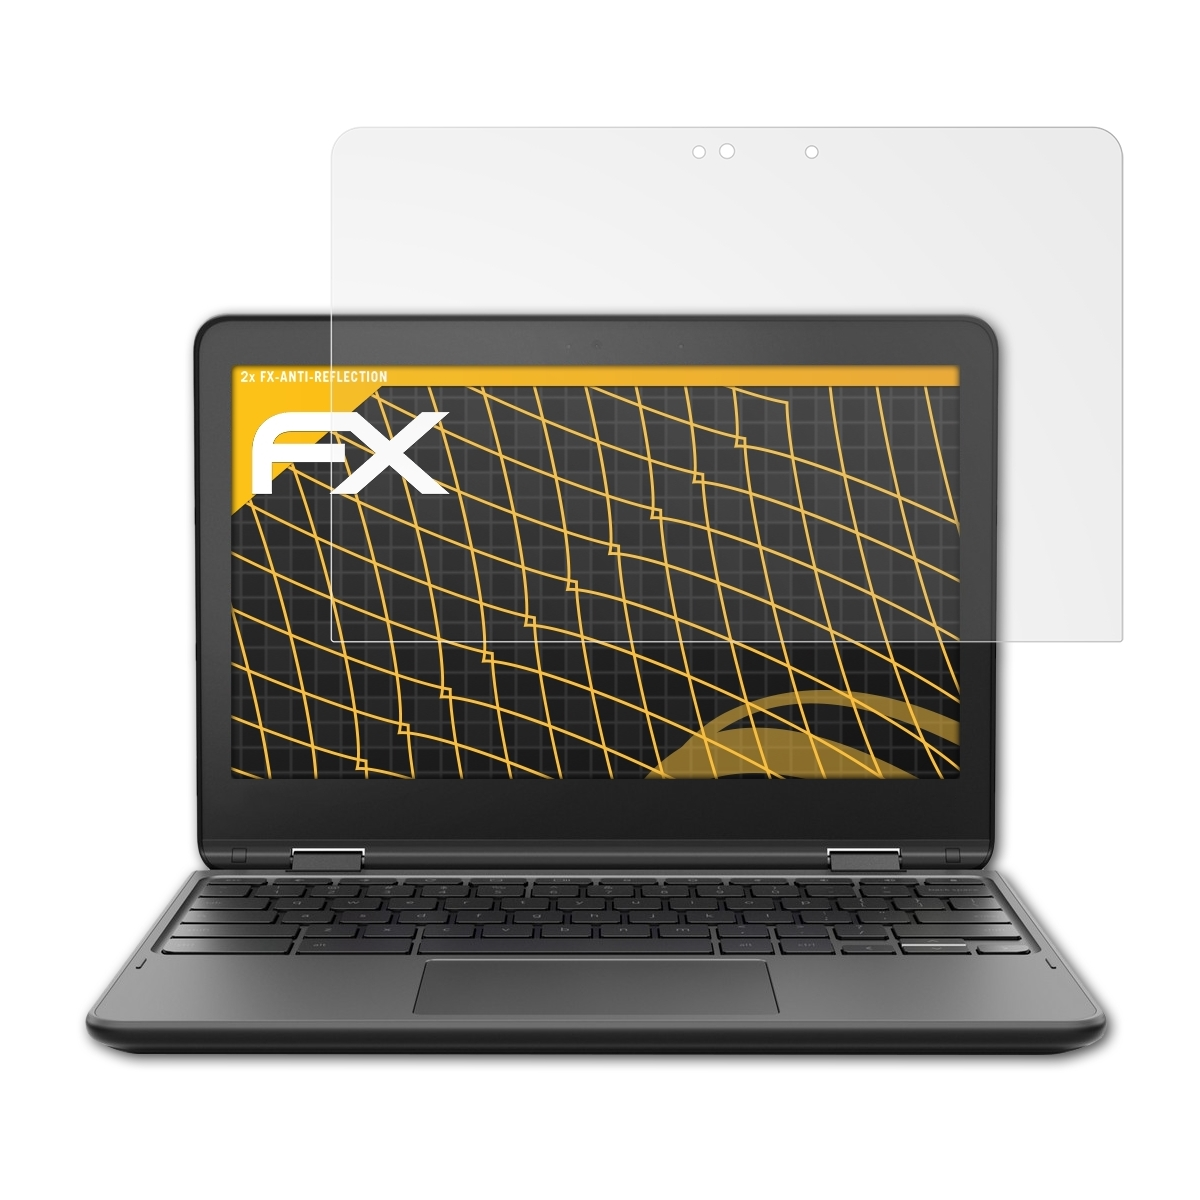 ATFOLIX 2x FX-Antireflex Displayschutz(für Chromebook) 300e Lenovo